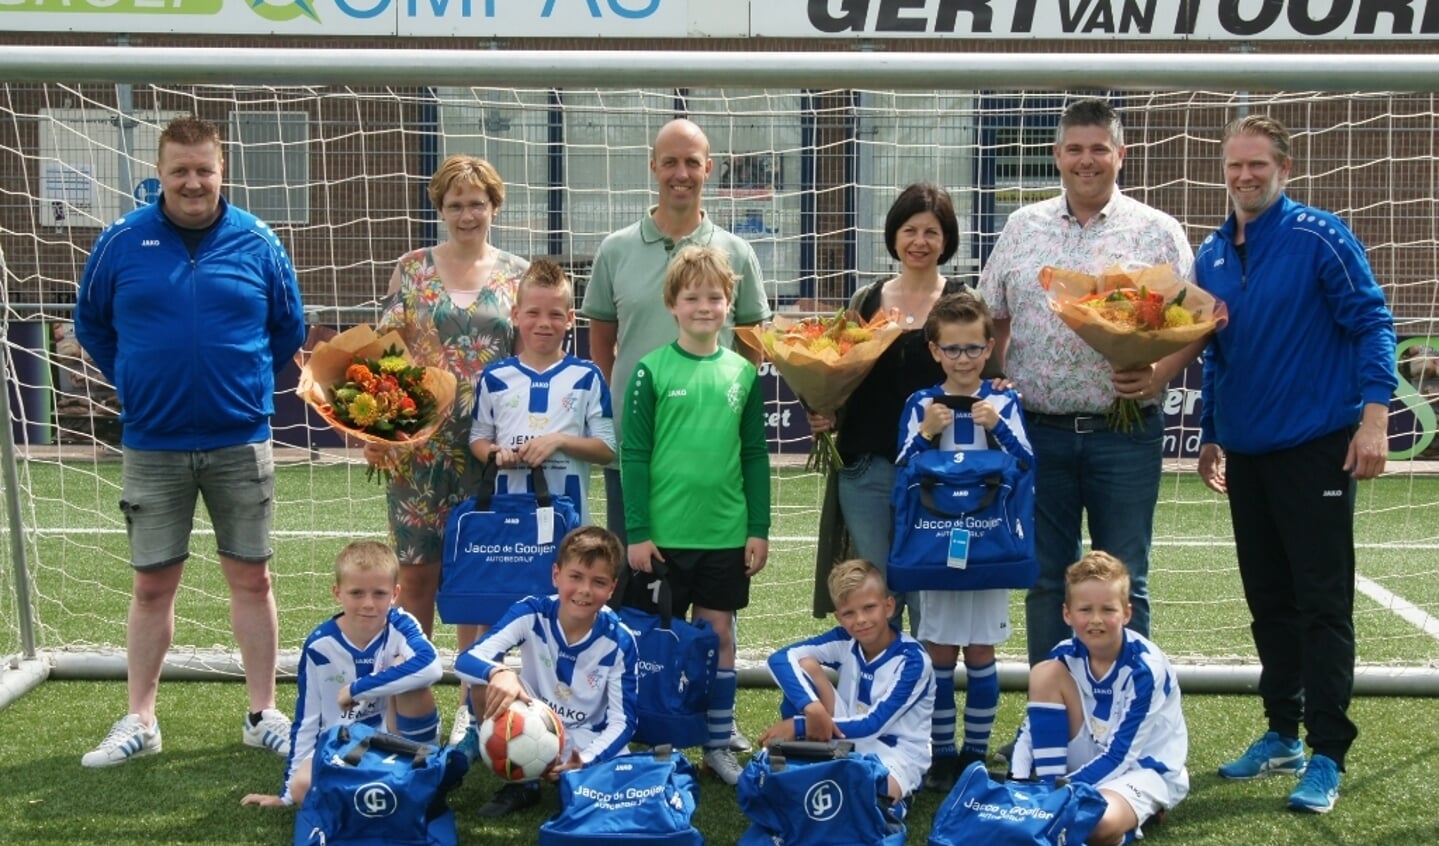 FC Lienden JO-9 met de sponsoren Hoveniersbedrijf Van Dijk, Zelfstandig Jemako adviseur Bianca van den Brink & Autobedrijf Jacco de Gooijer